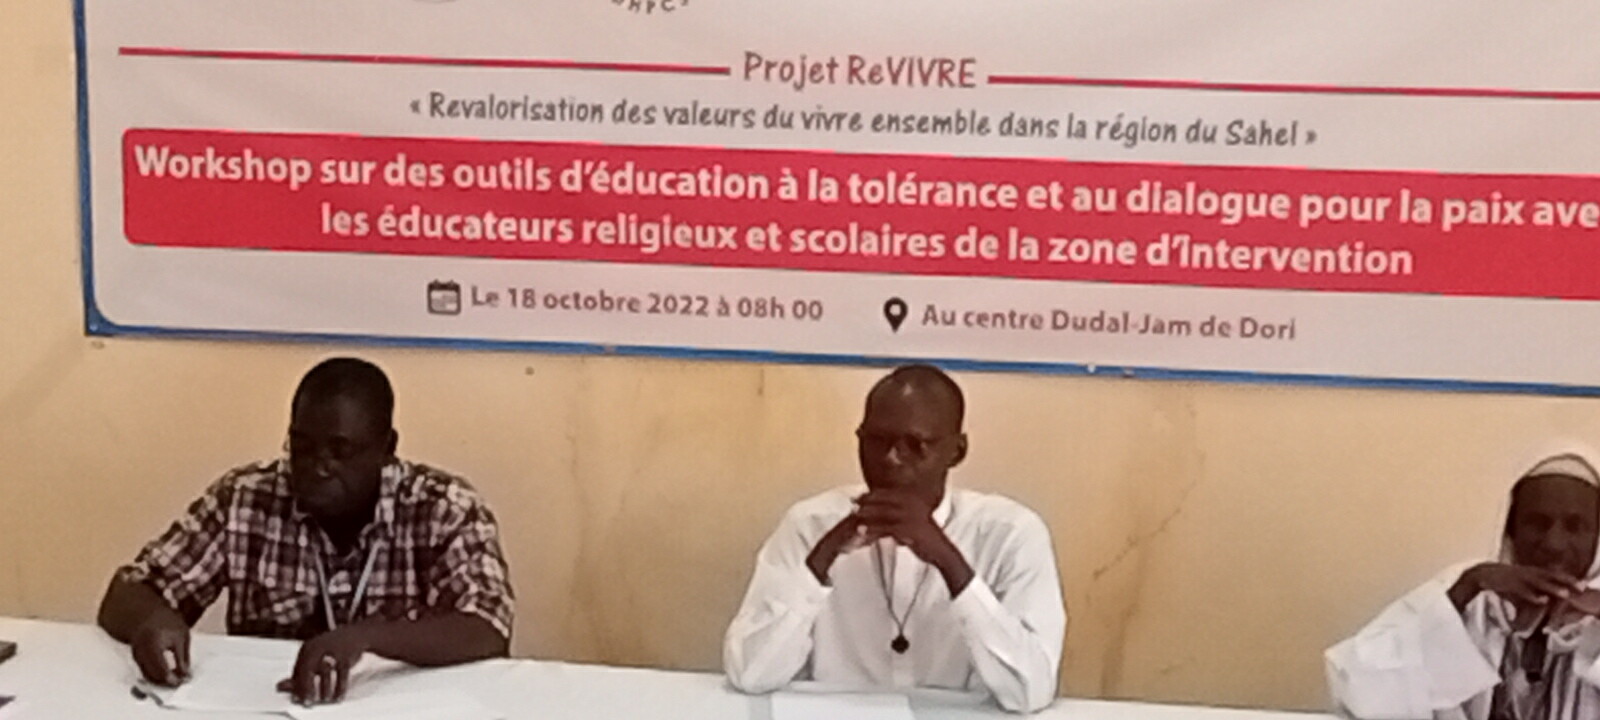 Dori : Des éducateurs religieux et scolaires à l’école de la tolérance et du dialogue pour la paix